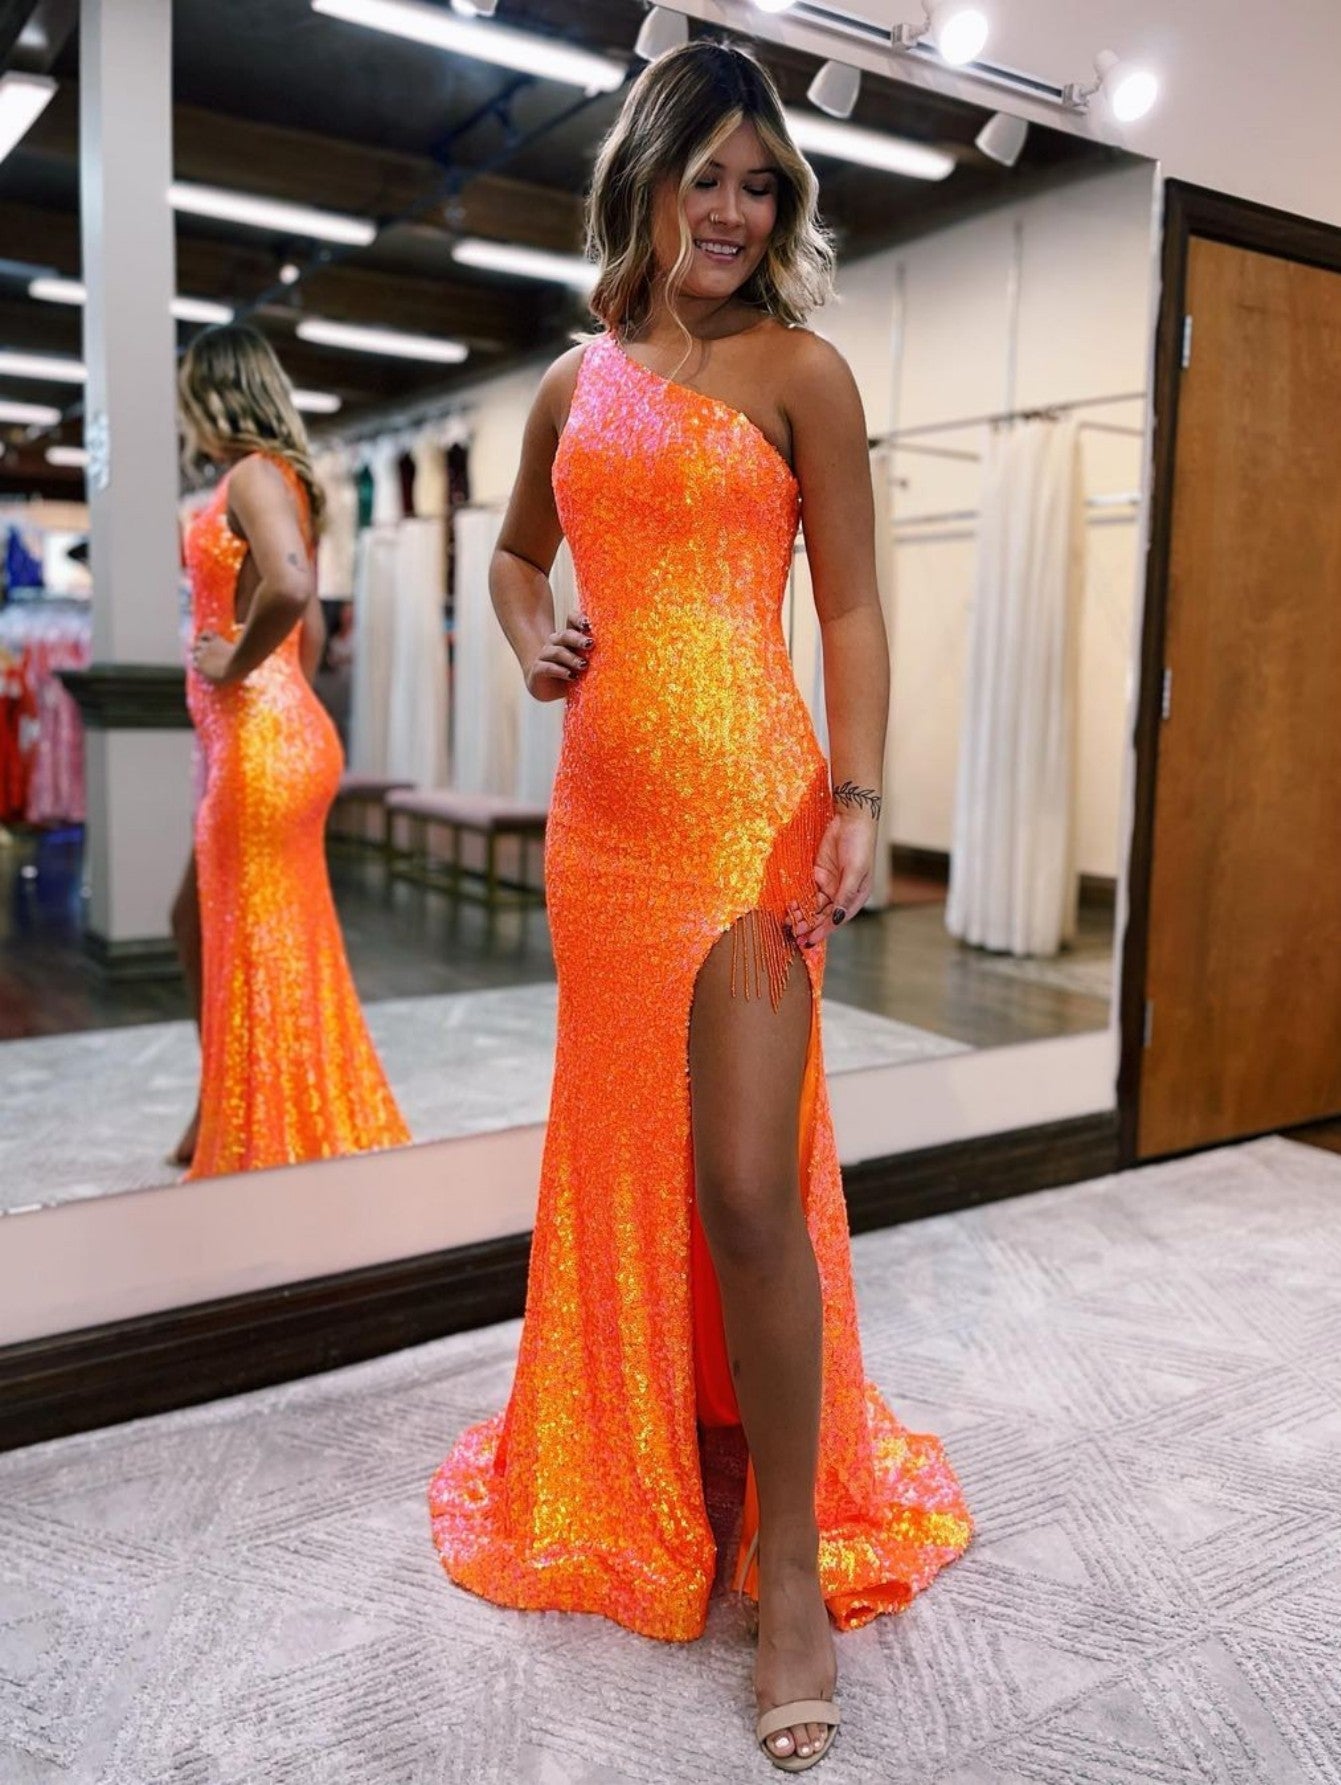 one shoulder prom dresses orange